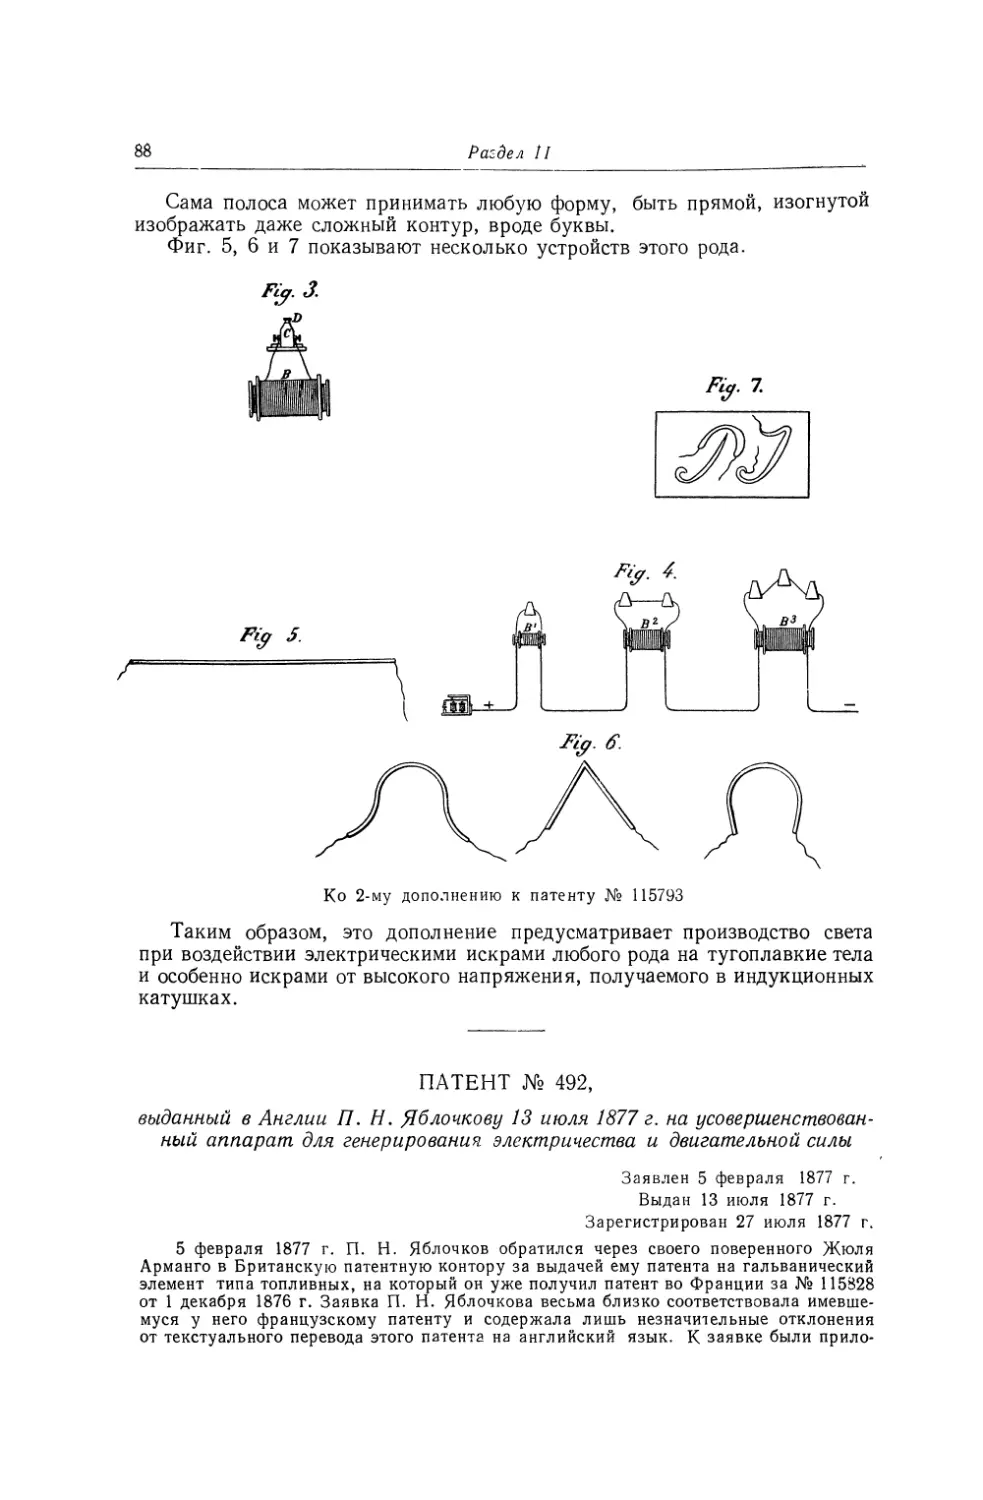 Патент № 492, выданный в Англии П. Н. Яблочкову 13 июля 1877 г. на усовершенствованный аппарат для генерирования электричества и двигательной силы